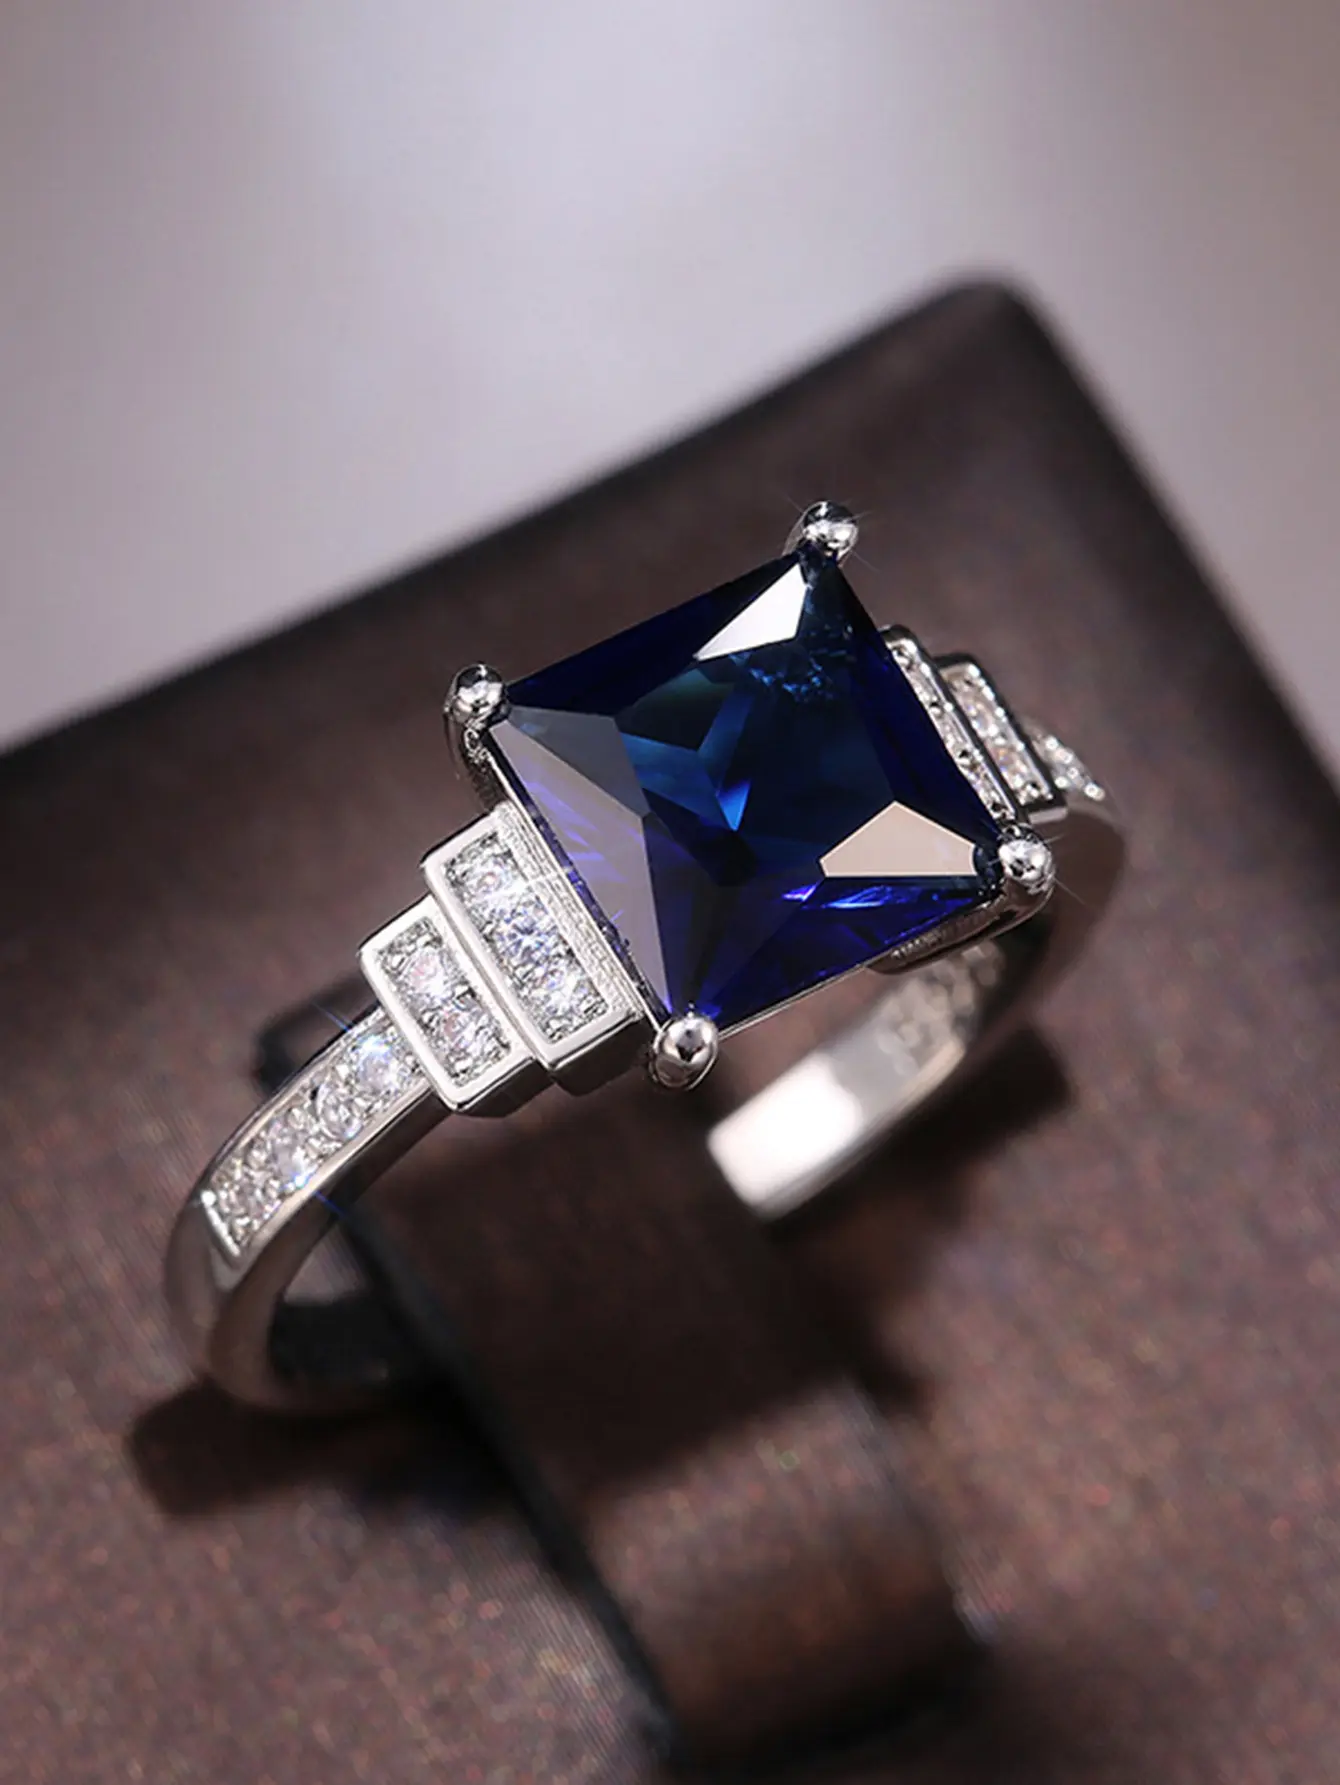 แฟชั่นแหวนชุบเงินผู้หญิงเครื่องประดับสีฟ้า Siz 6-10 จําลองแก้วแหวนเพชร claddagh